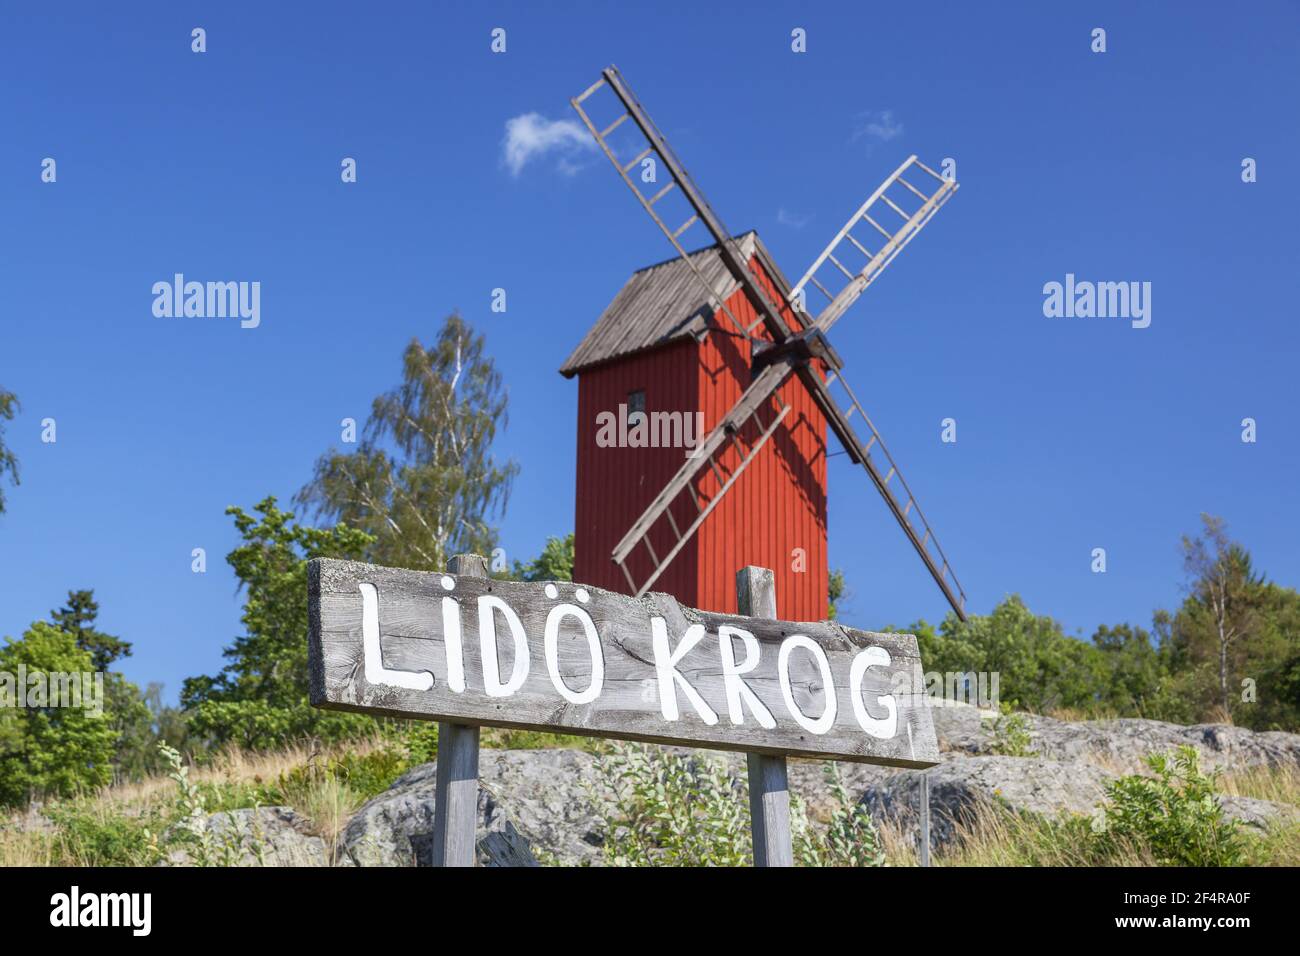 Géographie / Voyage, Suède, Stockholm laen, Stockholm skaergård, moulin rouge de poste en face du Lido Kr, droits-supplémentaires-autorisations-Info-non-disponible Banque D'Images